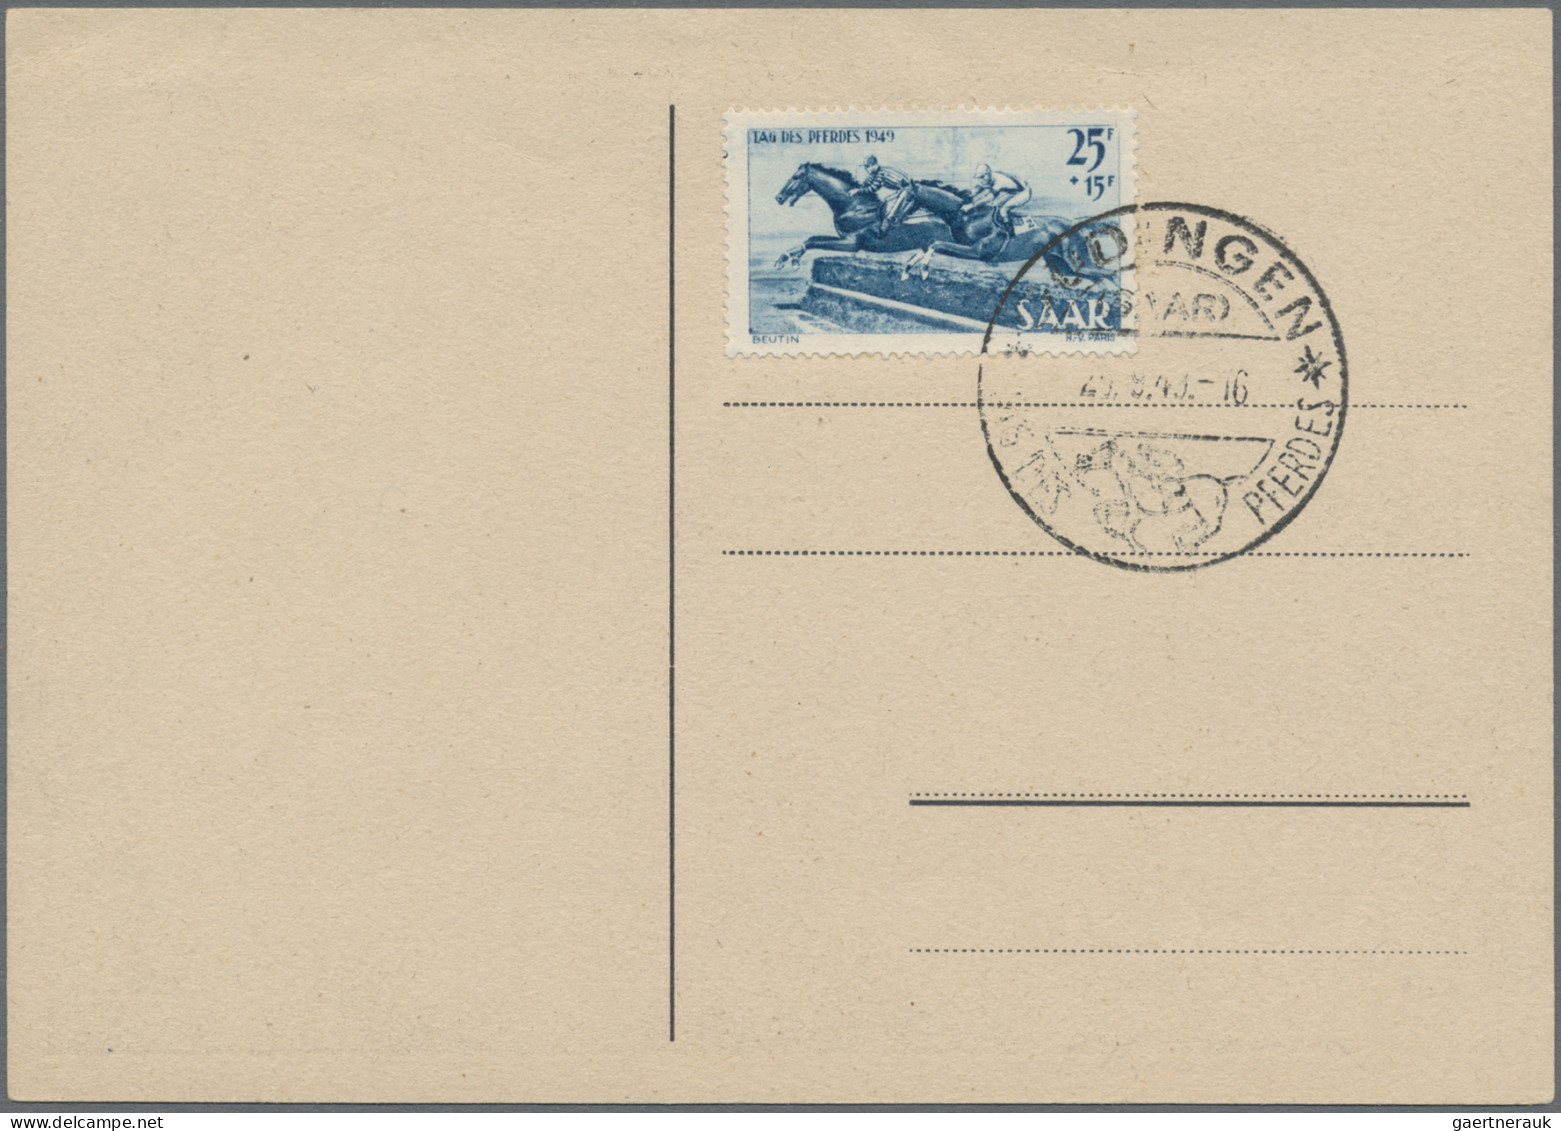 Saarland (1947/56): 1947/1958, nette Partie von 31 Briefen und Karten, dabei att